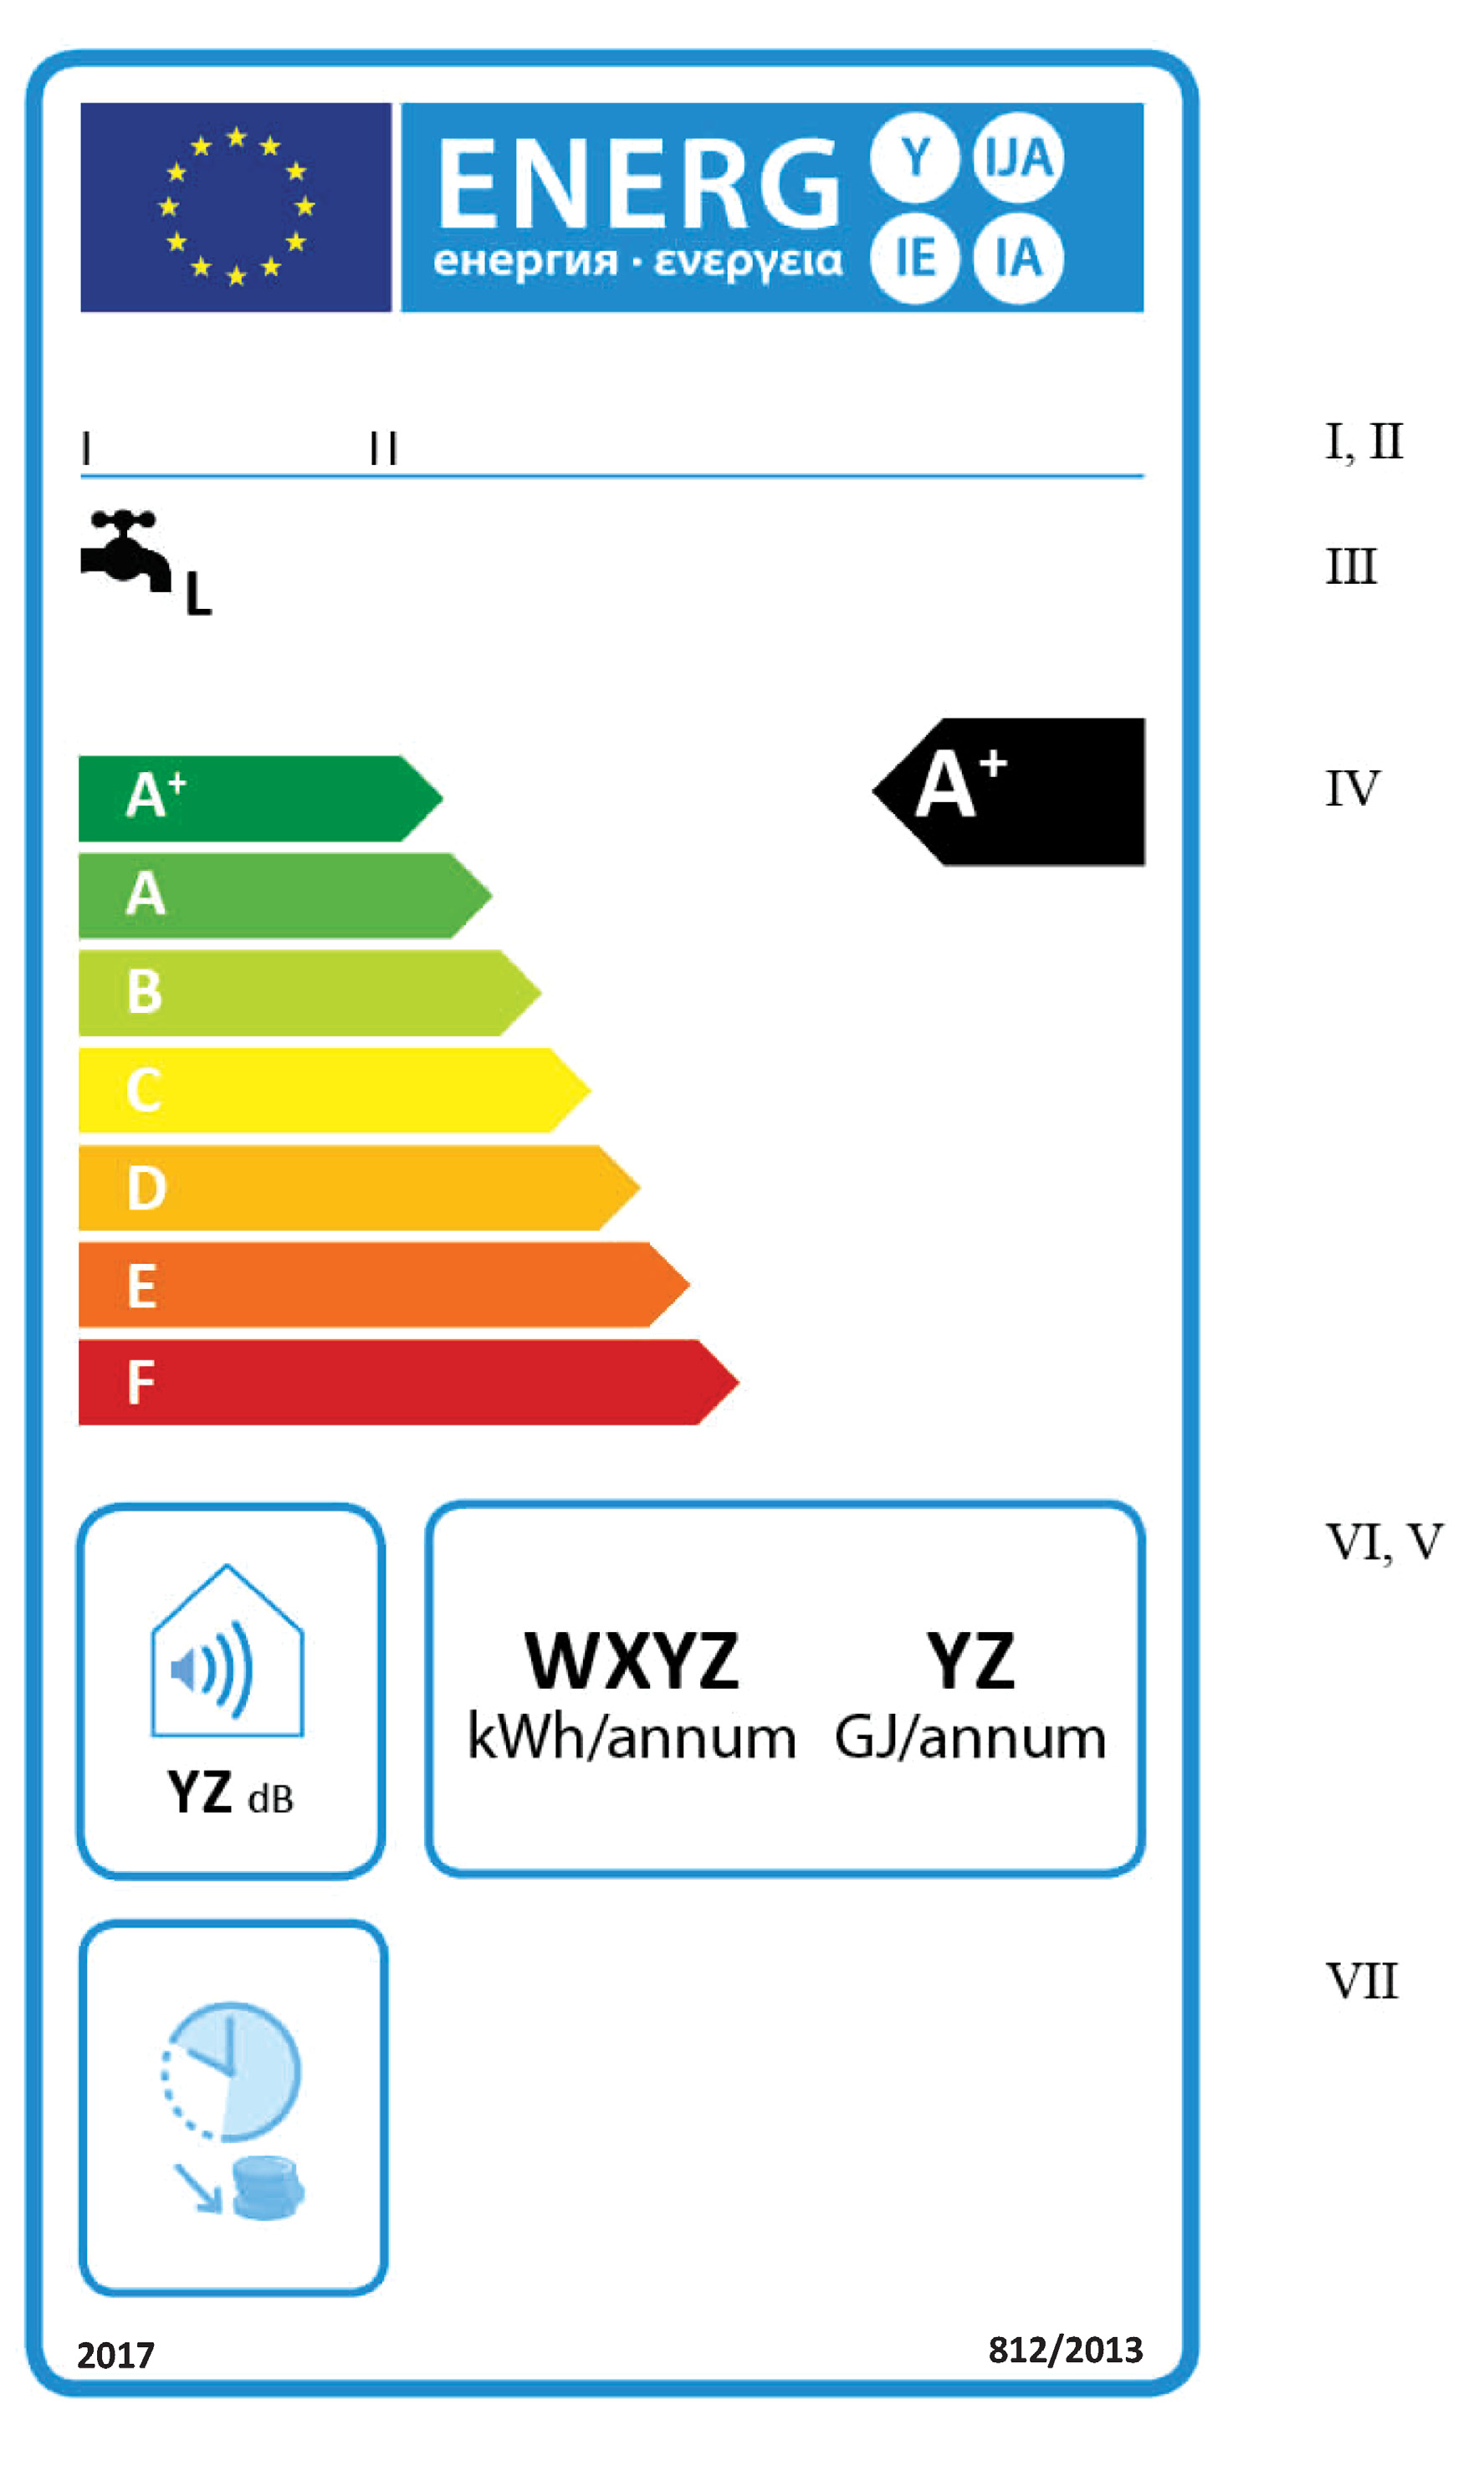 2013R0812 ES 06.06.2014 001.001 25 1.2. Etiqueta 2 1.2.1. Calentadores de agua convencionales de las clases de eficiencia energética de caldeo de agua de A + a F (a) En la etiqueta figurará la información enumerada en el punto 1.